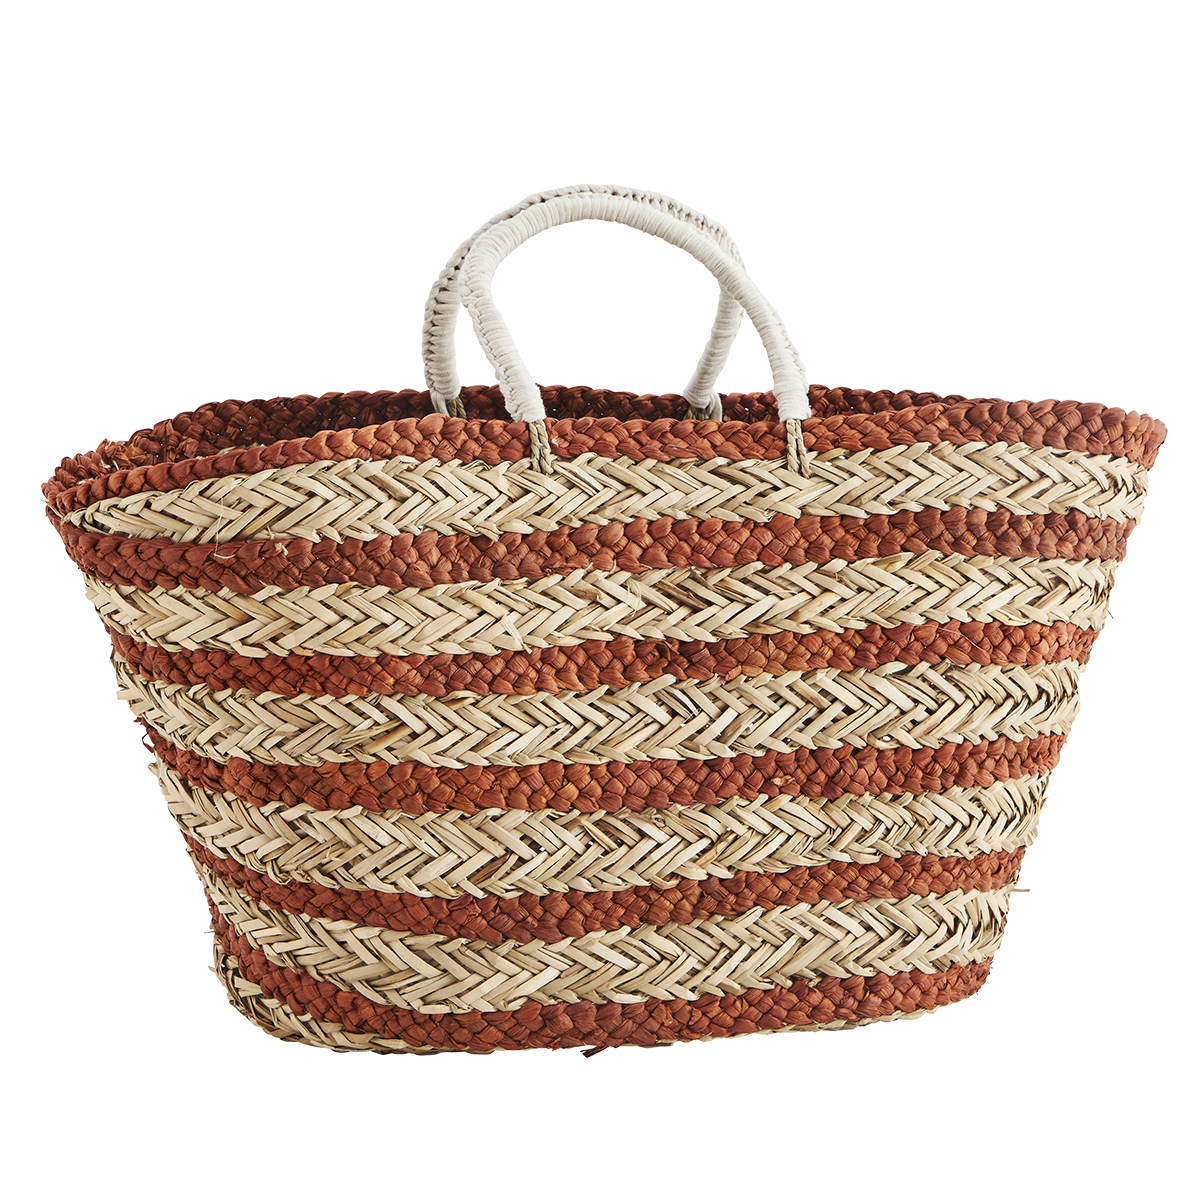 Striped seagrass bag